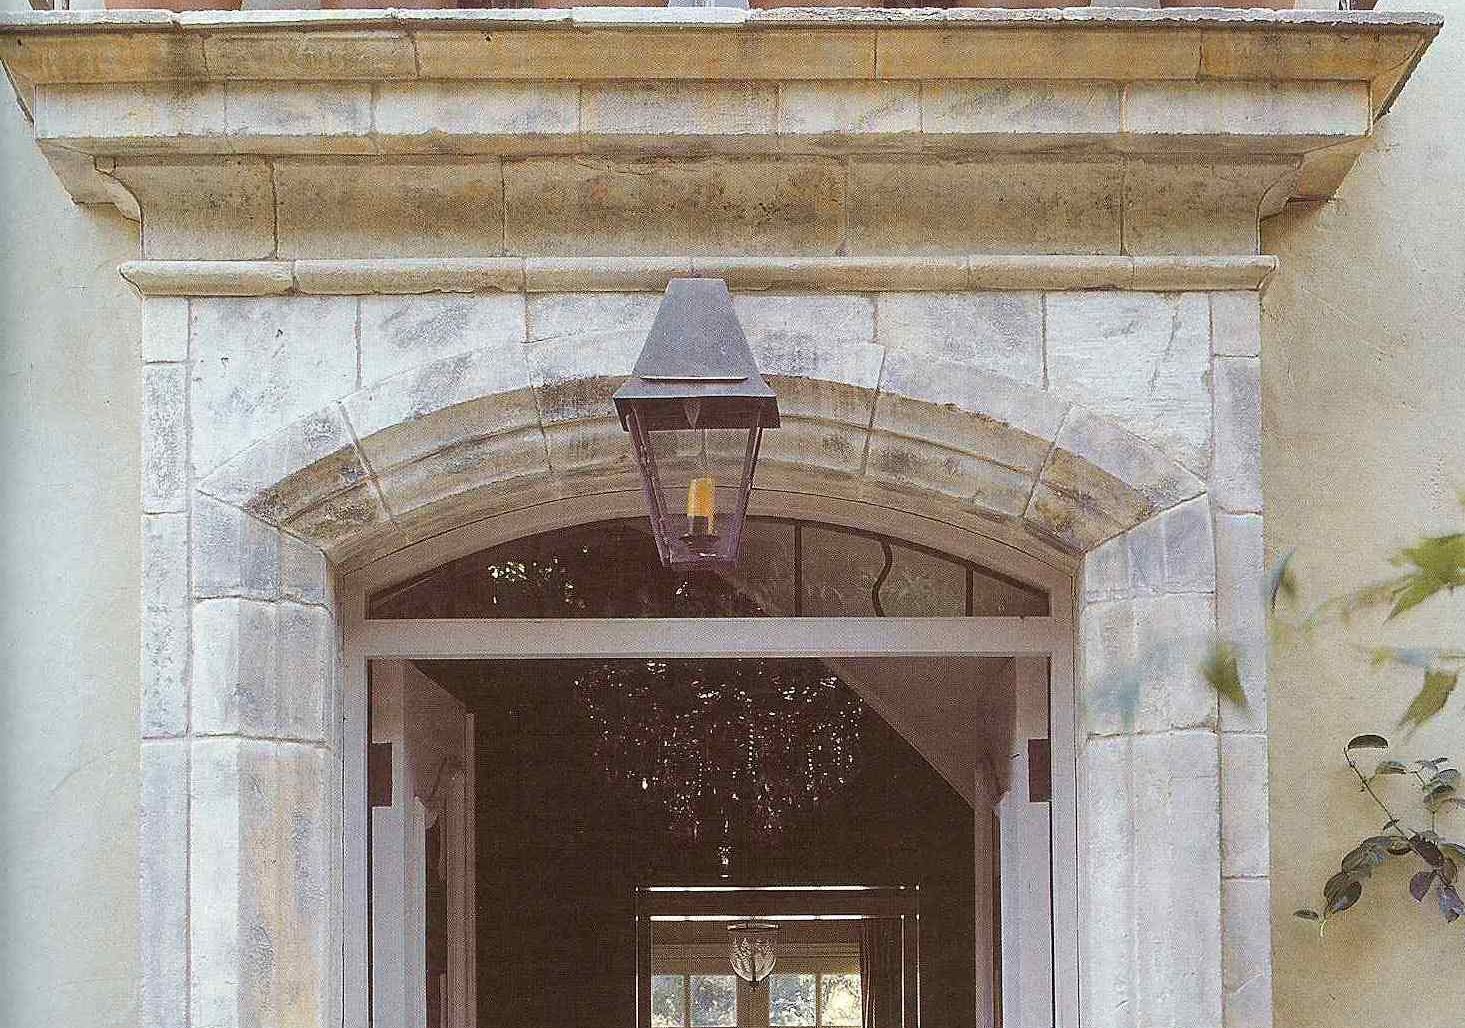 Custom Doorsurround in Antique Limestone Block